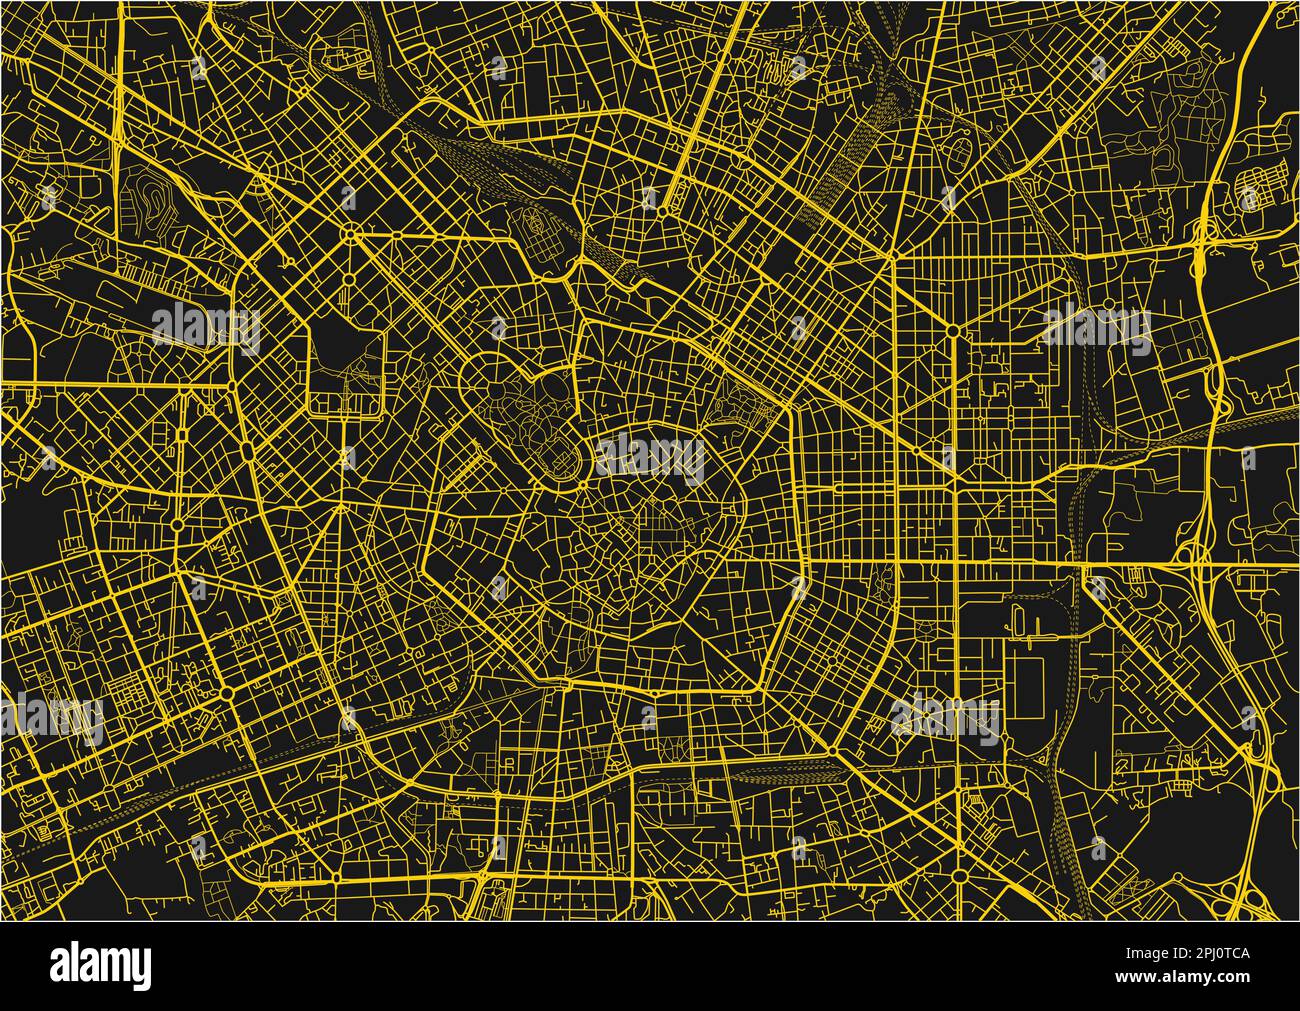 Schwarz-gelber Stadtplan von Mailand mit gut organisierten getrennten Schichten. Stock Vektor